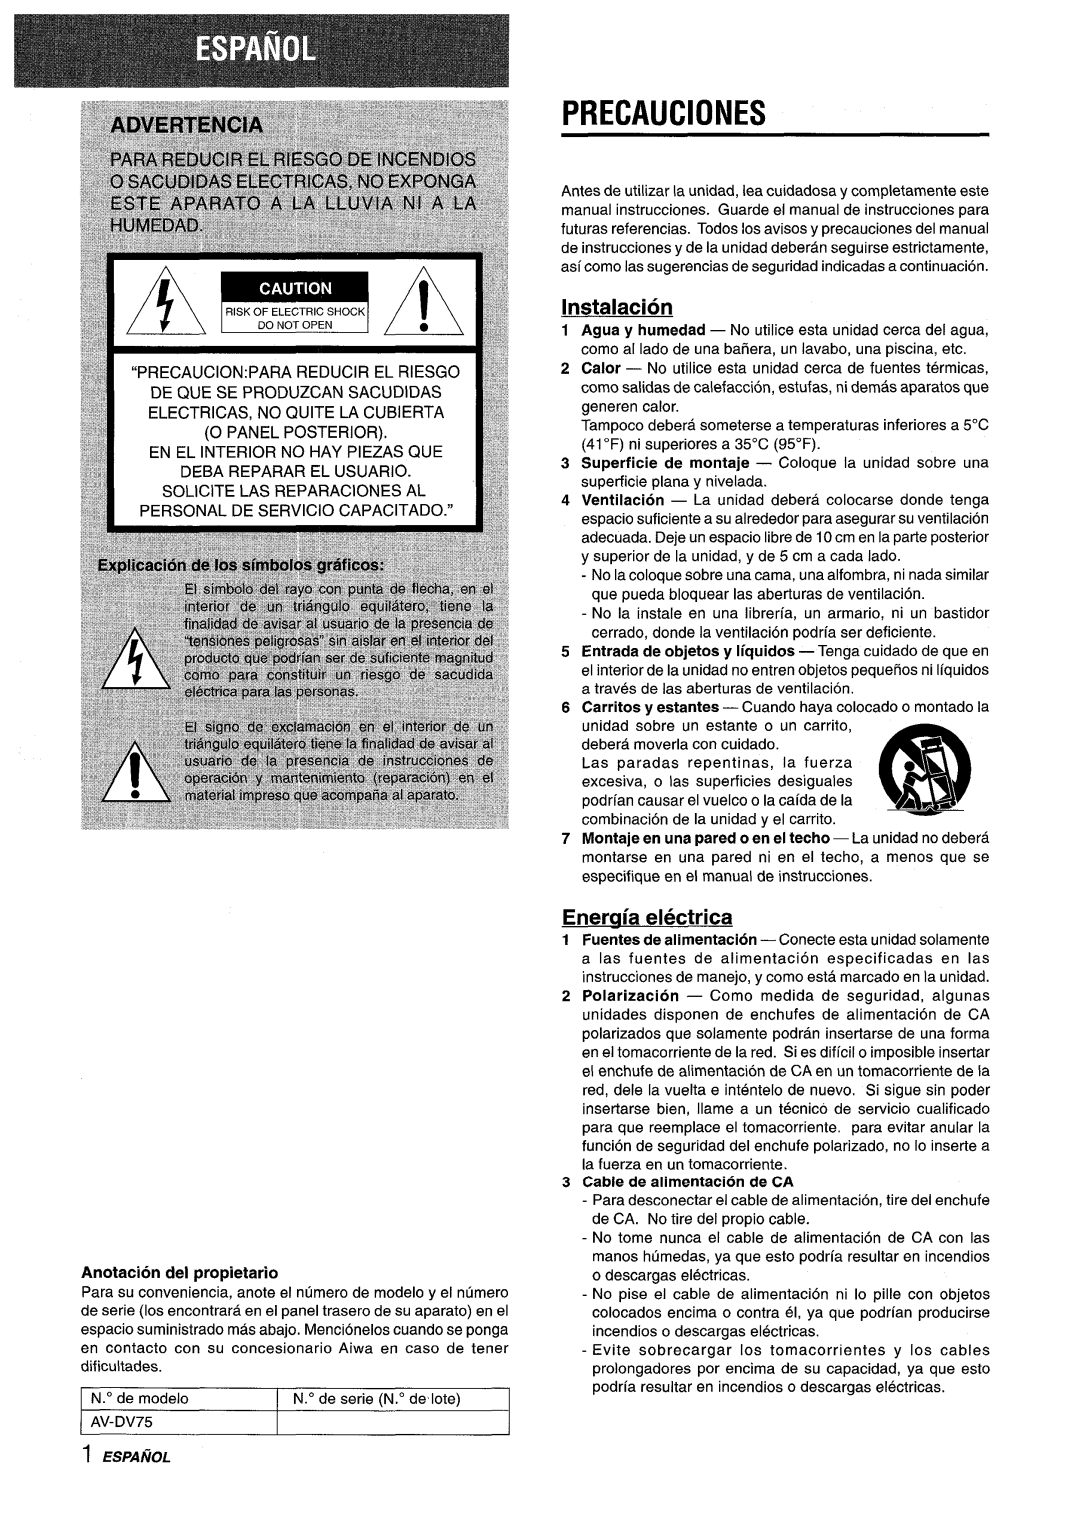 Sony AV-DV75 manual Precauciones, Instalacion, Eneraia electrica 